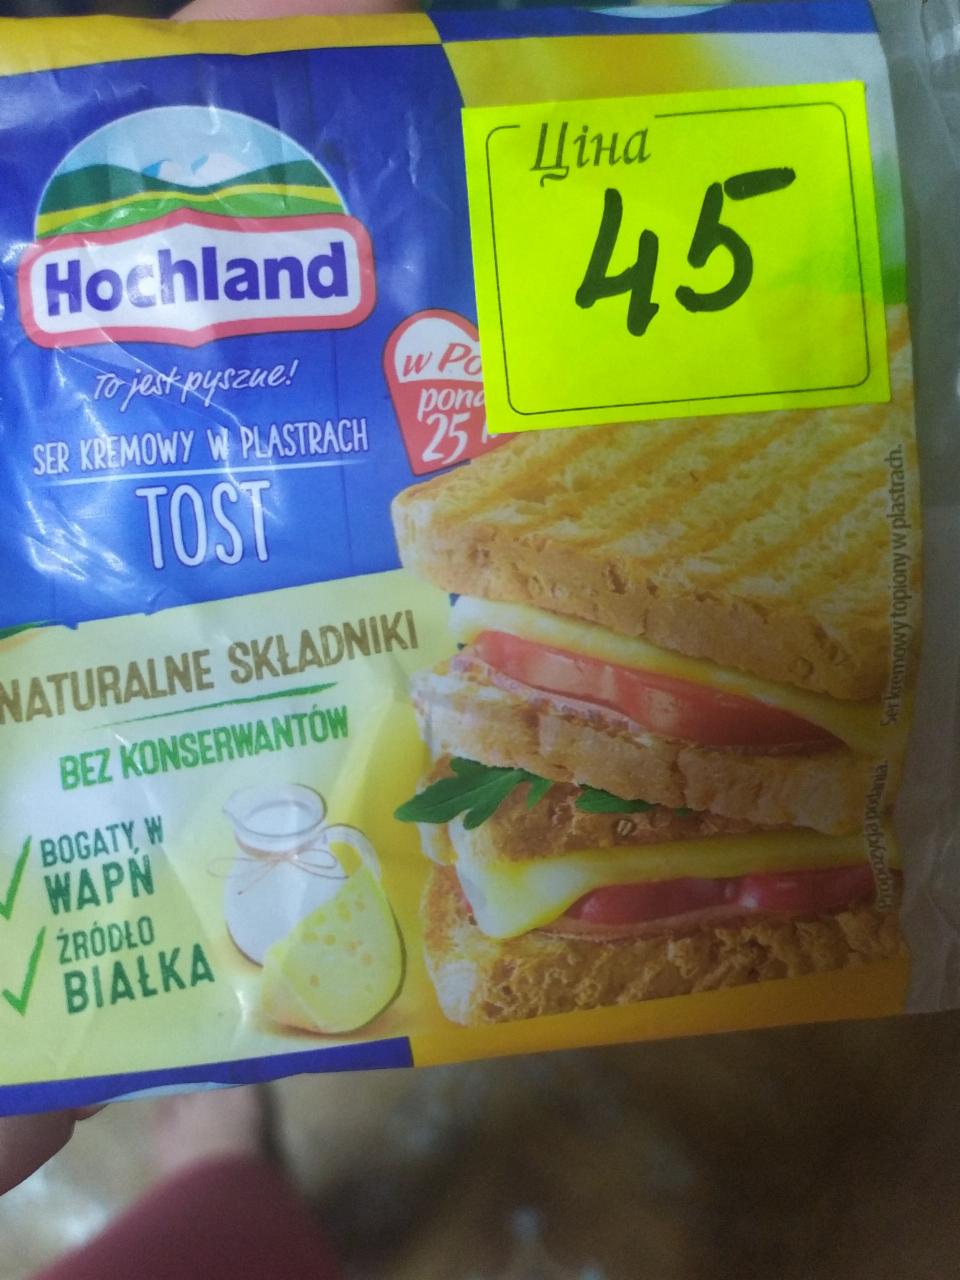 Фото - cир плавлений порційний Tost 40% Hochland